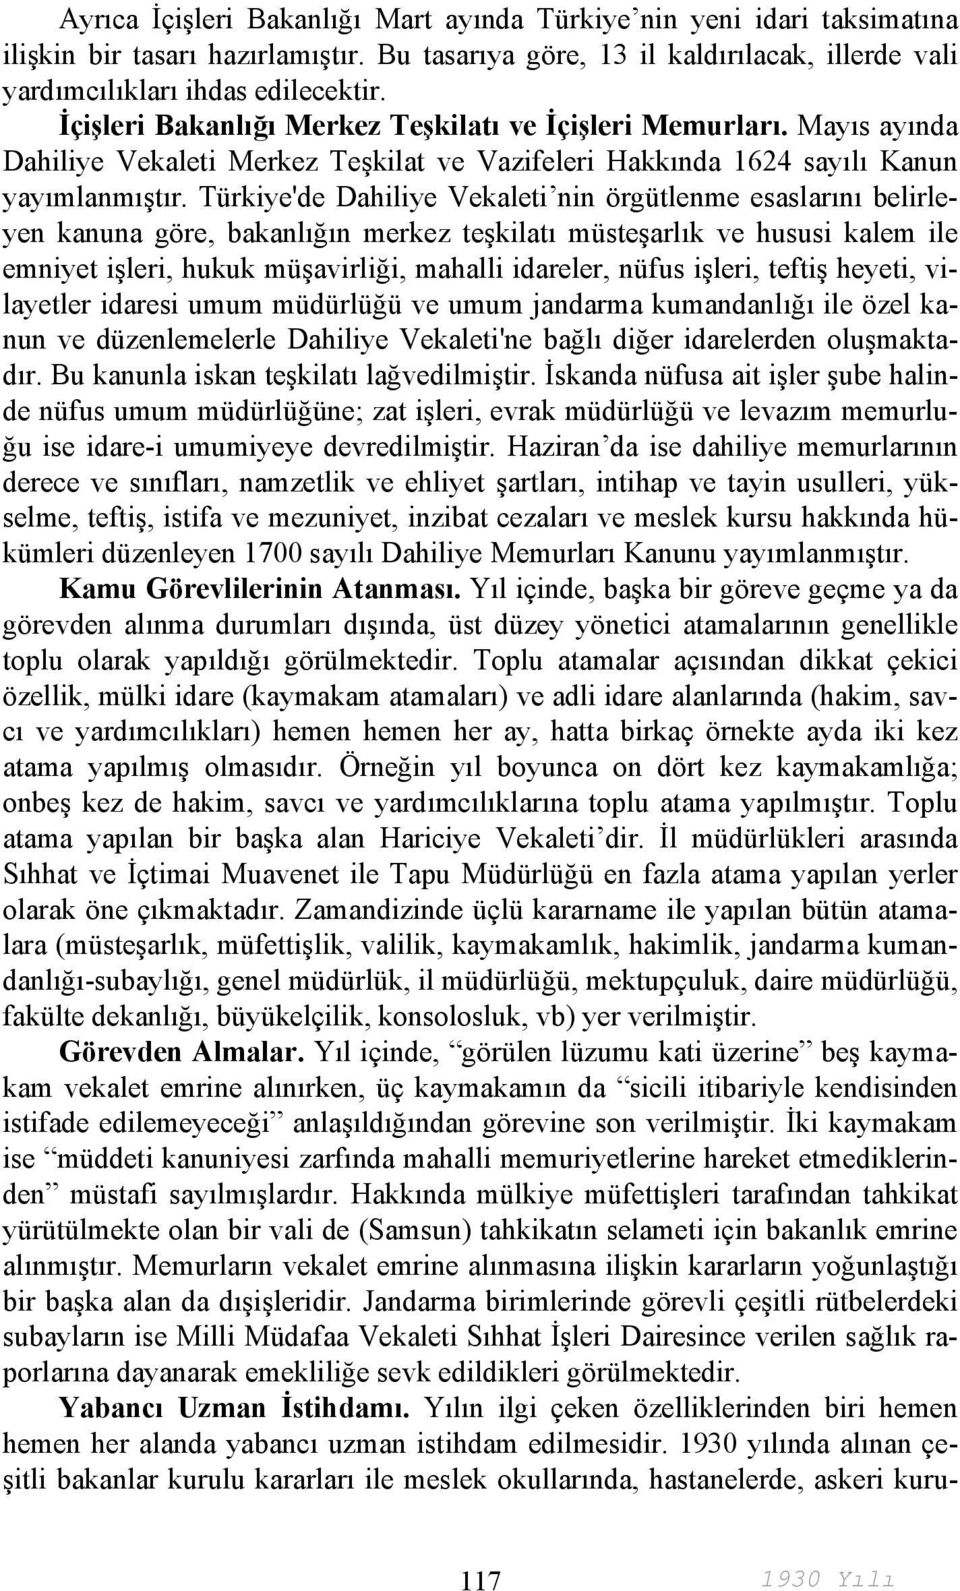 Türkiye'de Dahiliye Vekaleti nin örgütlenme esaslarını belirleyen kanuna göre, bakanlığın merkez teşkilatı müsteşarlık ve hususi kalem ile emniyet işleri, hukuk müşavirliği, mahalli idareler, nüfus